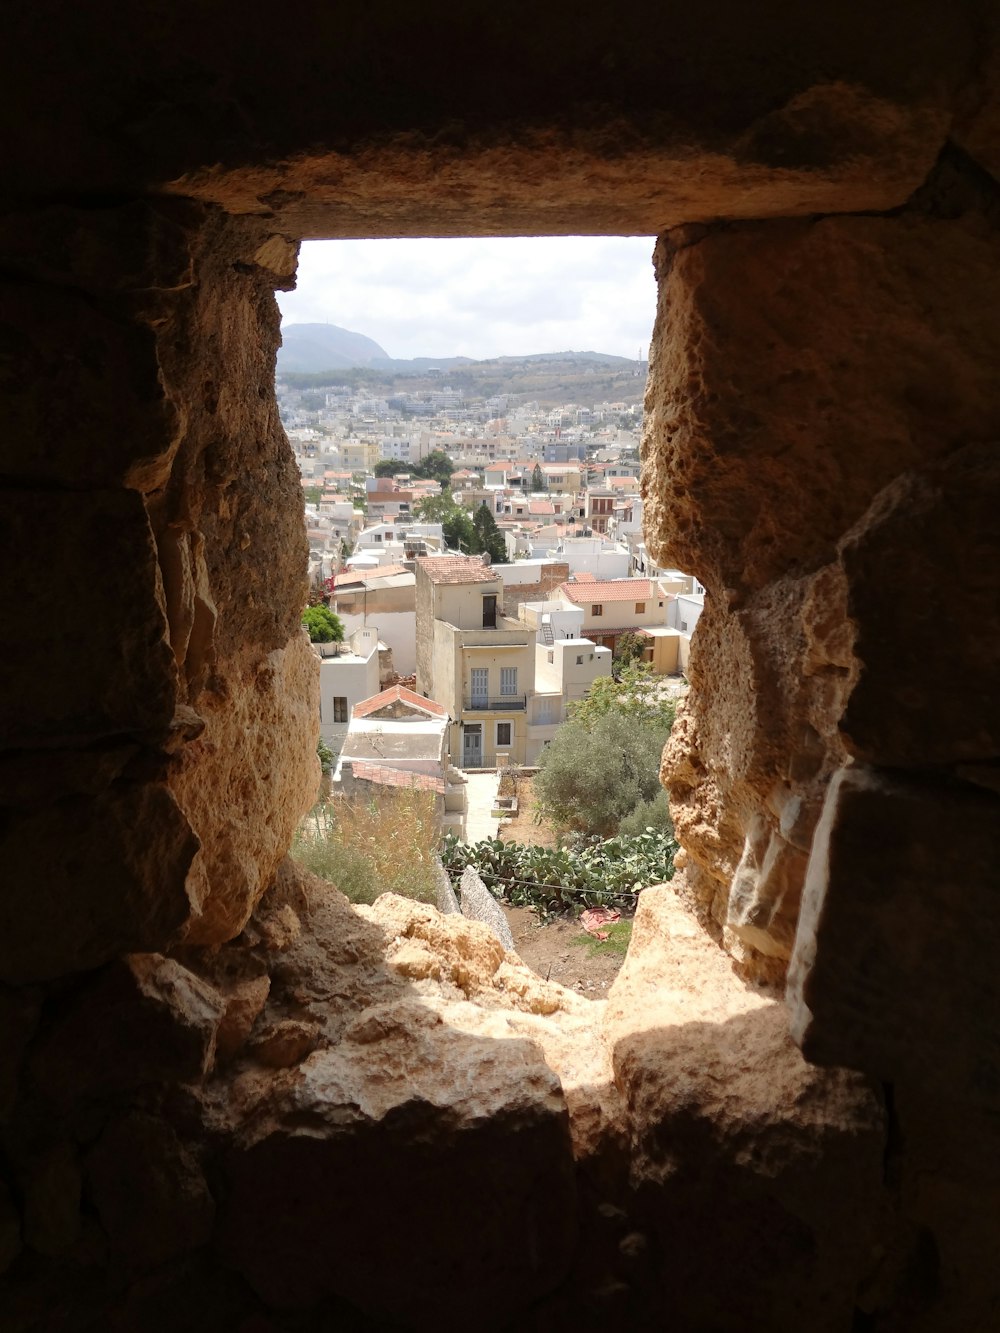 Una vista de una ciudad desde una ventana en un edificio de piedra